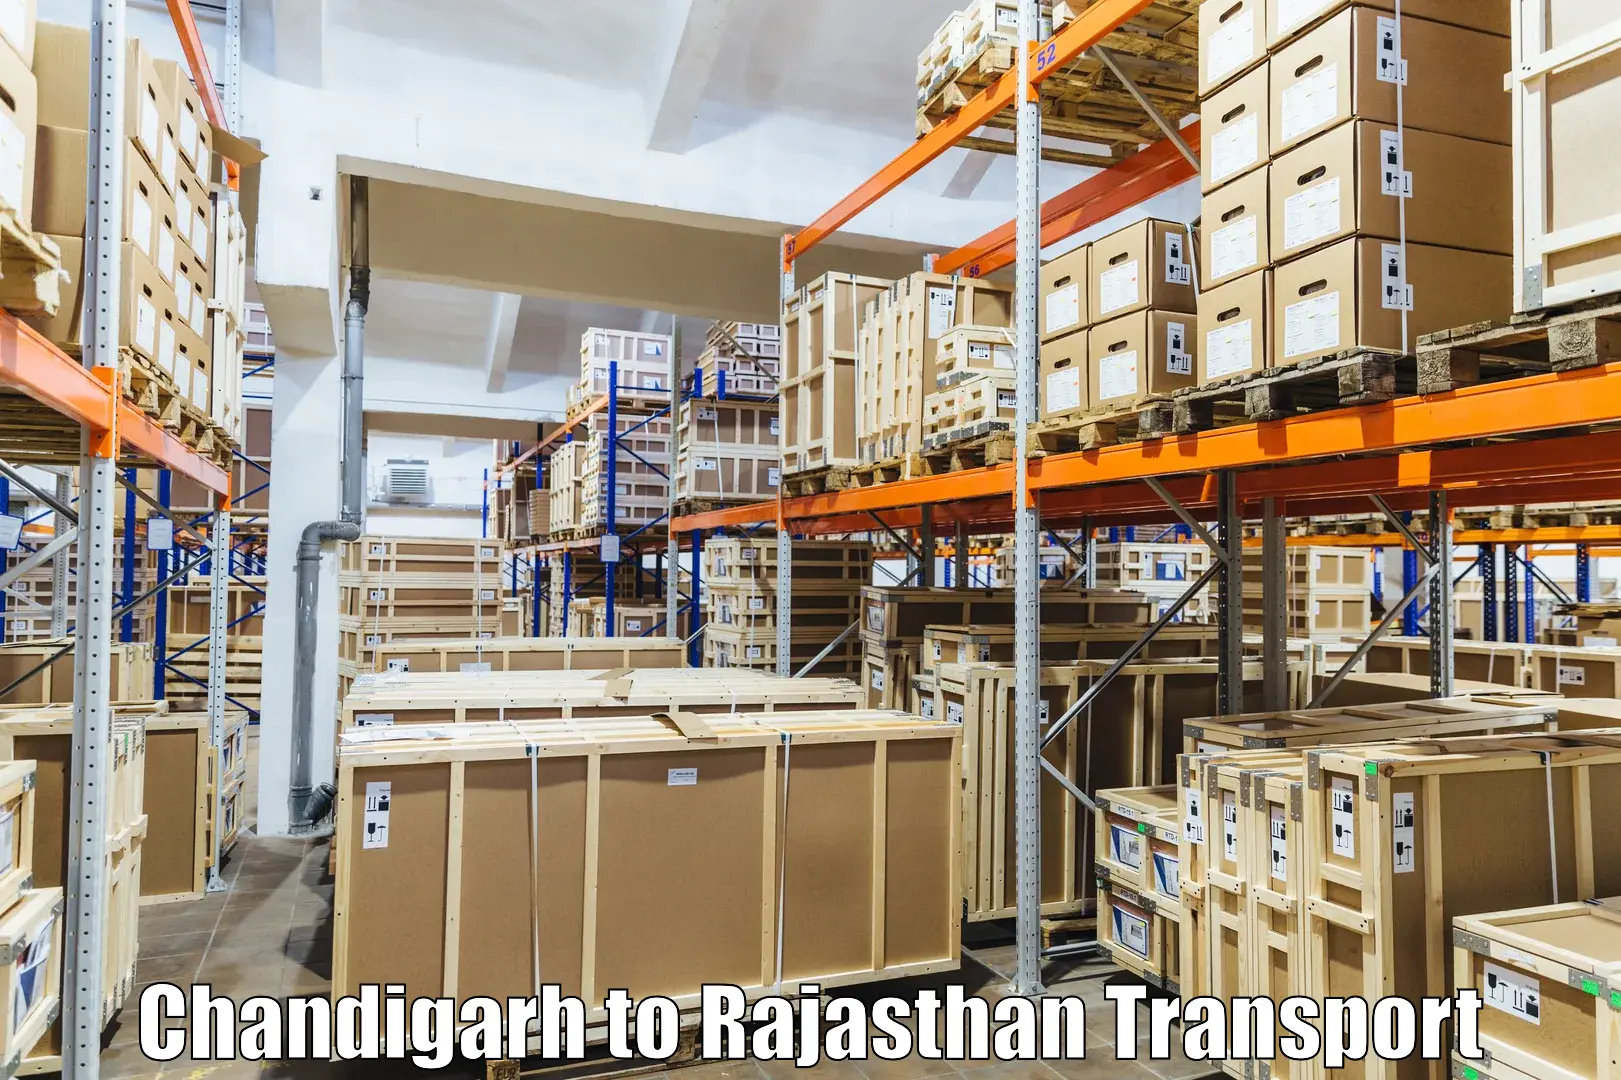 Air freight transport services Chandigarh to Fatehnagar